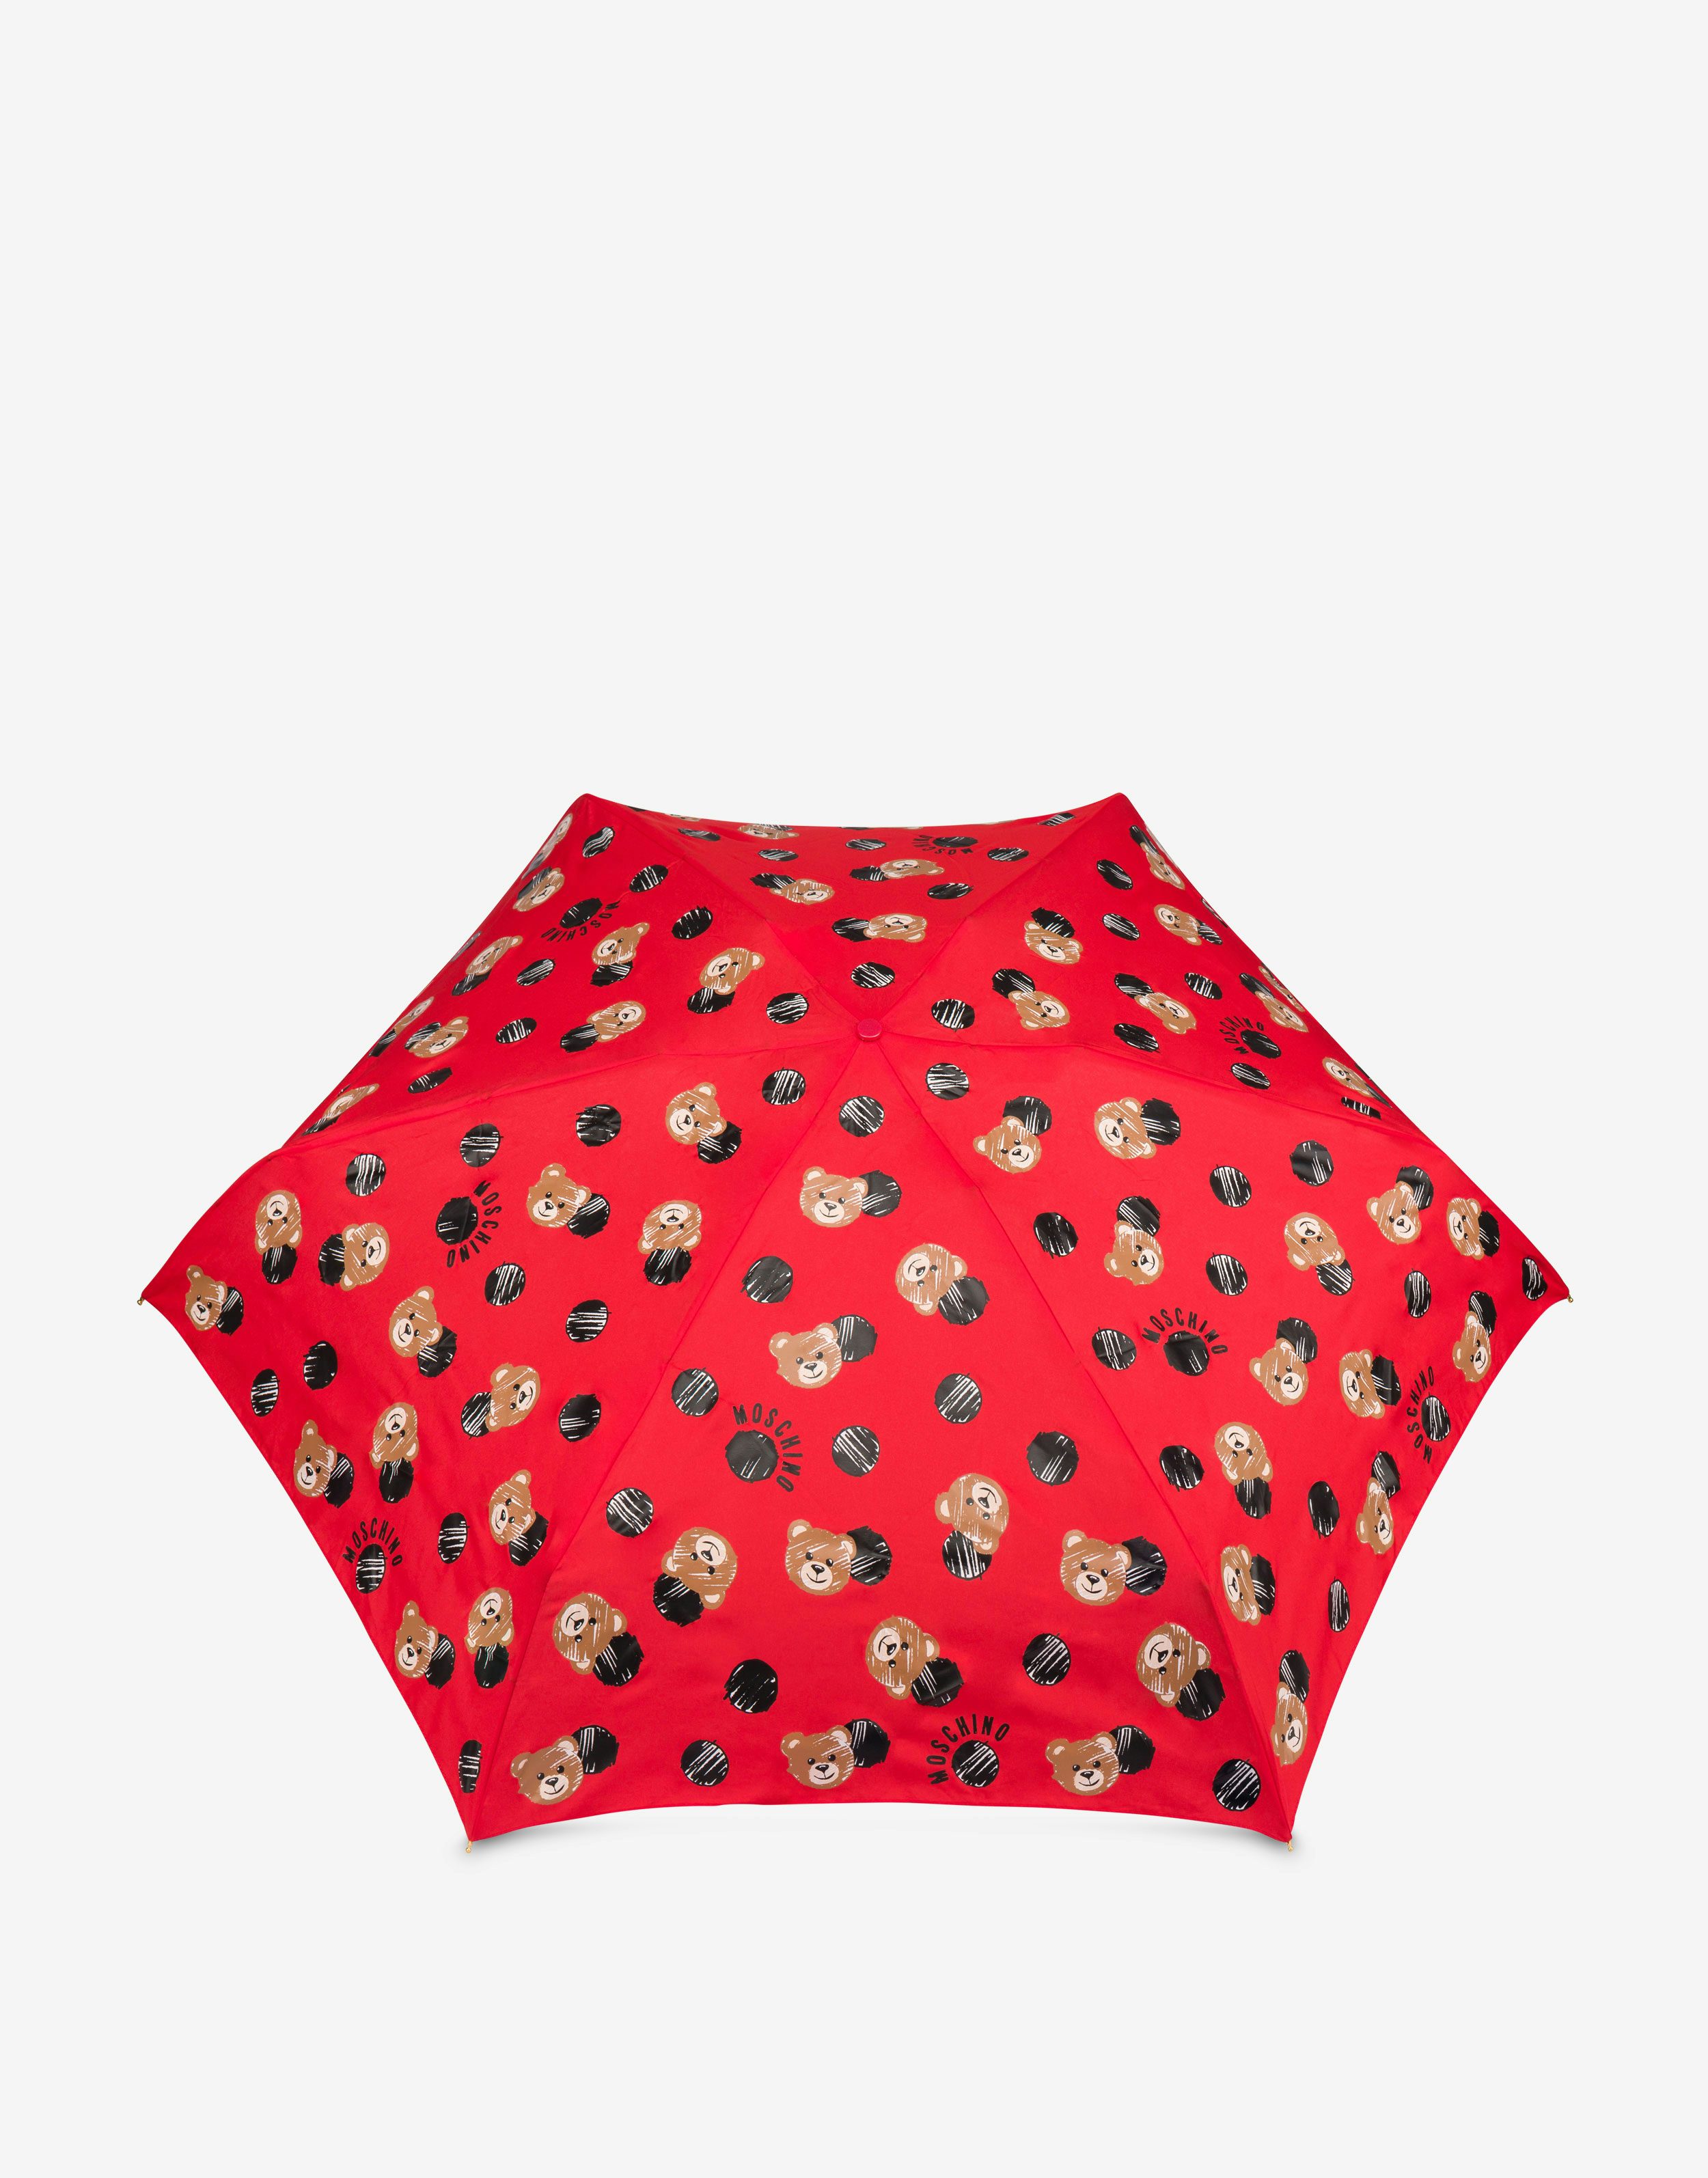 Allover Teddy Bear ultra-mini umbrella | Moschino Official Store